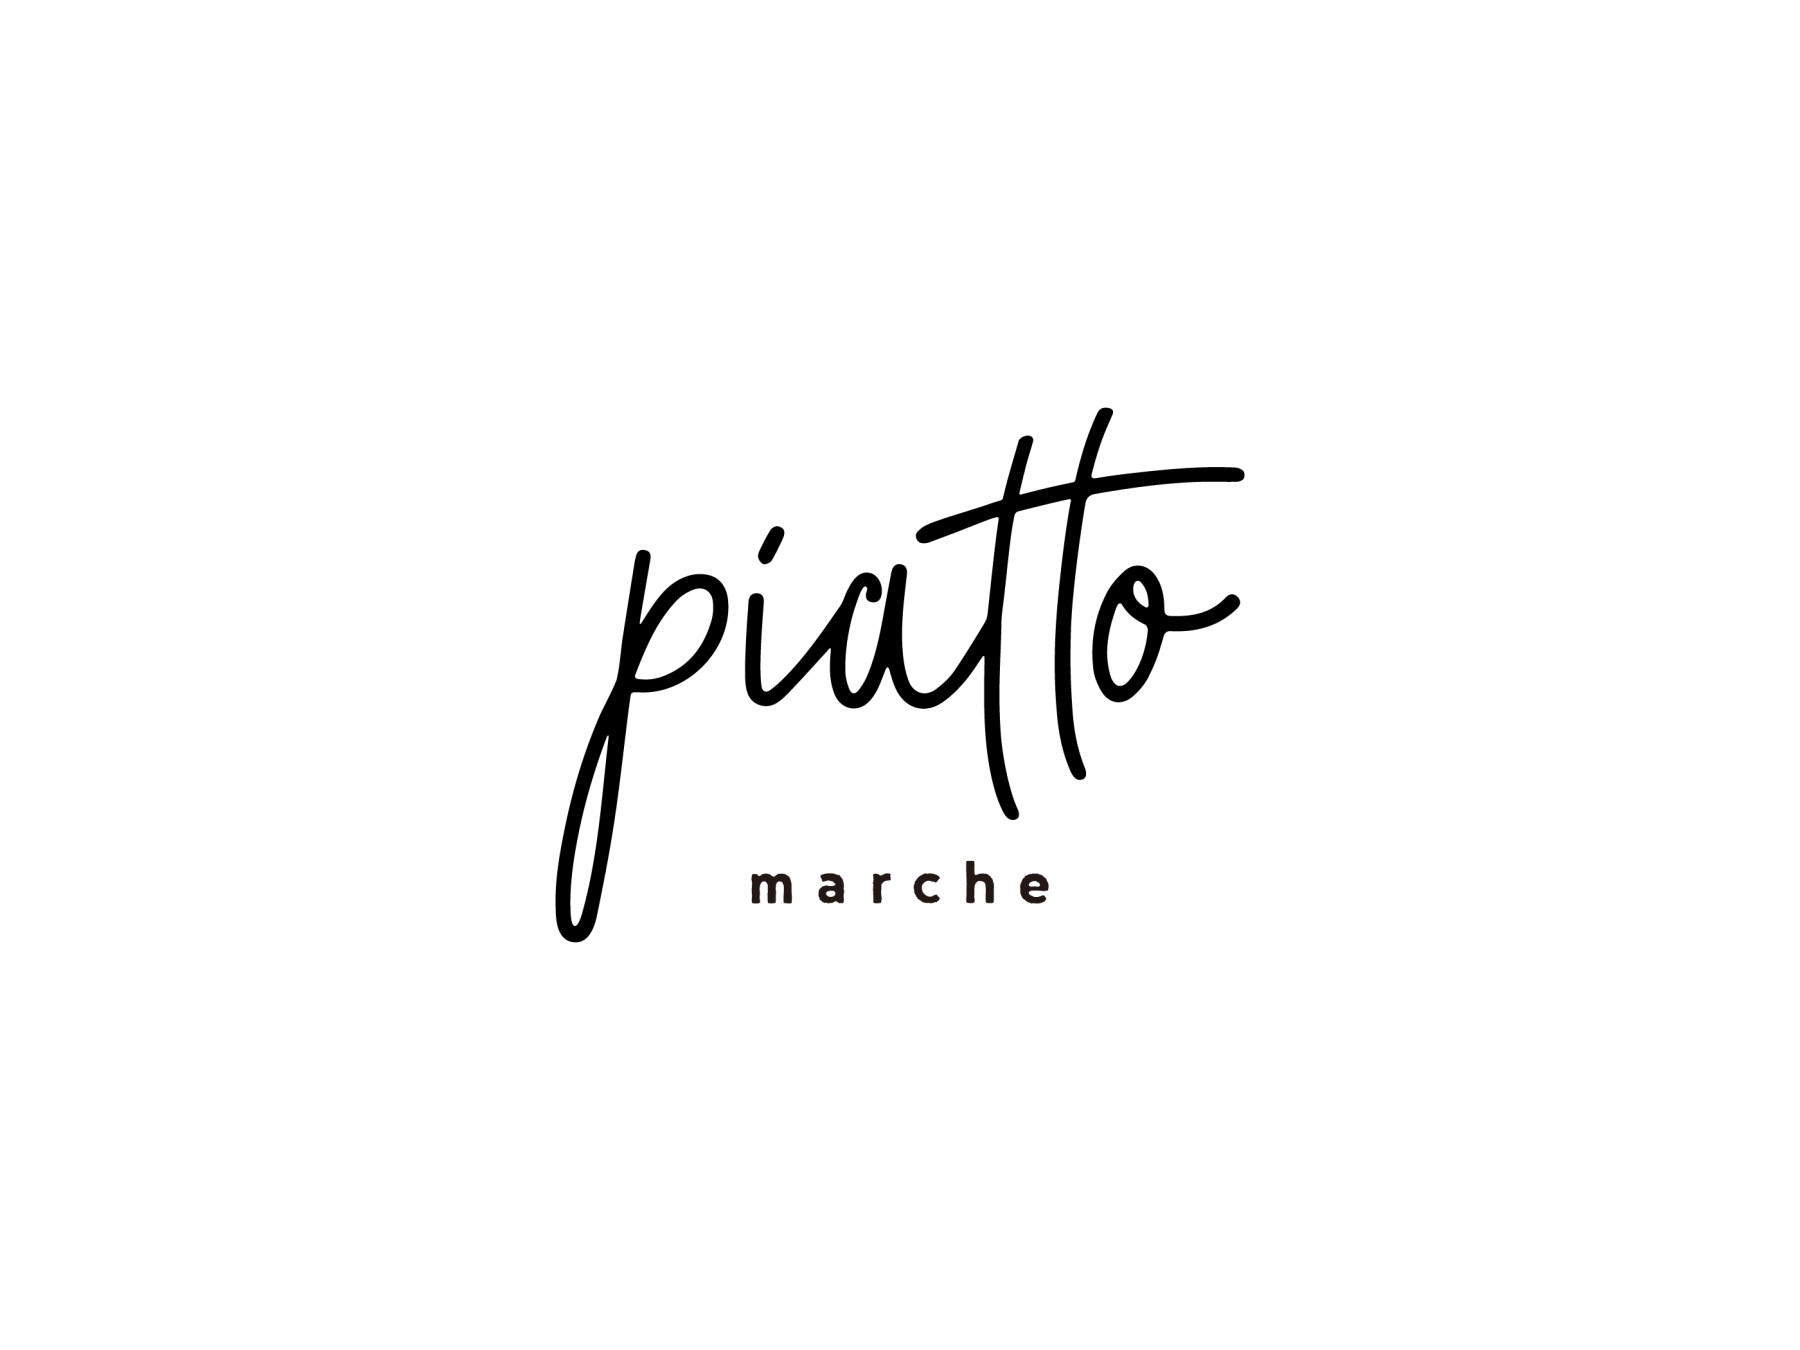 piattomarche - ピアットマルシェ